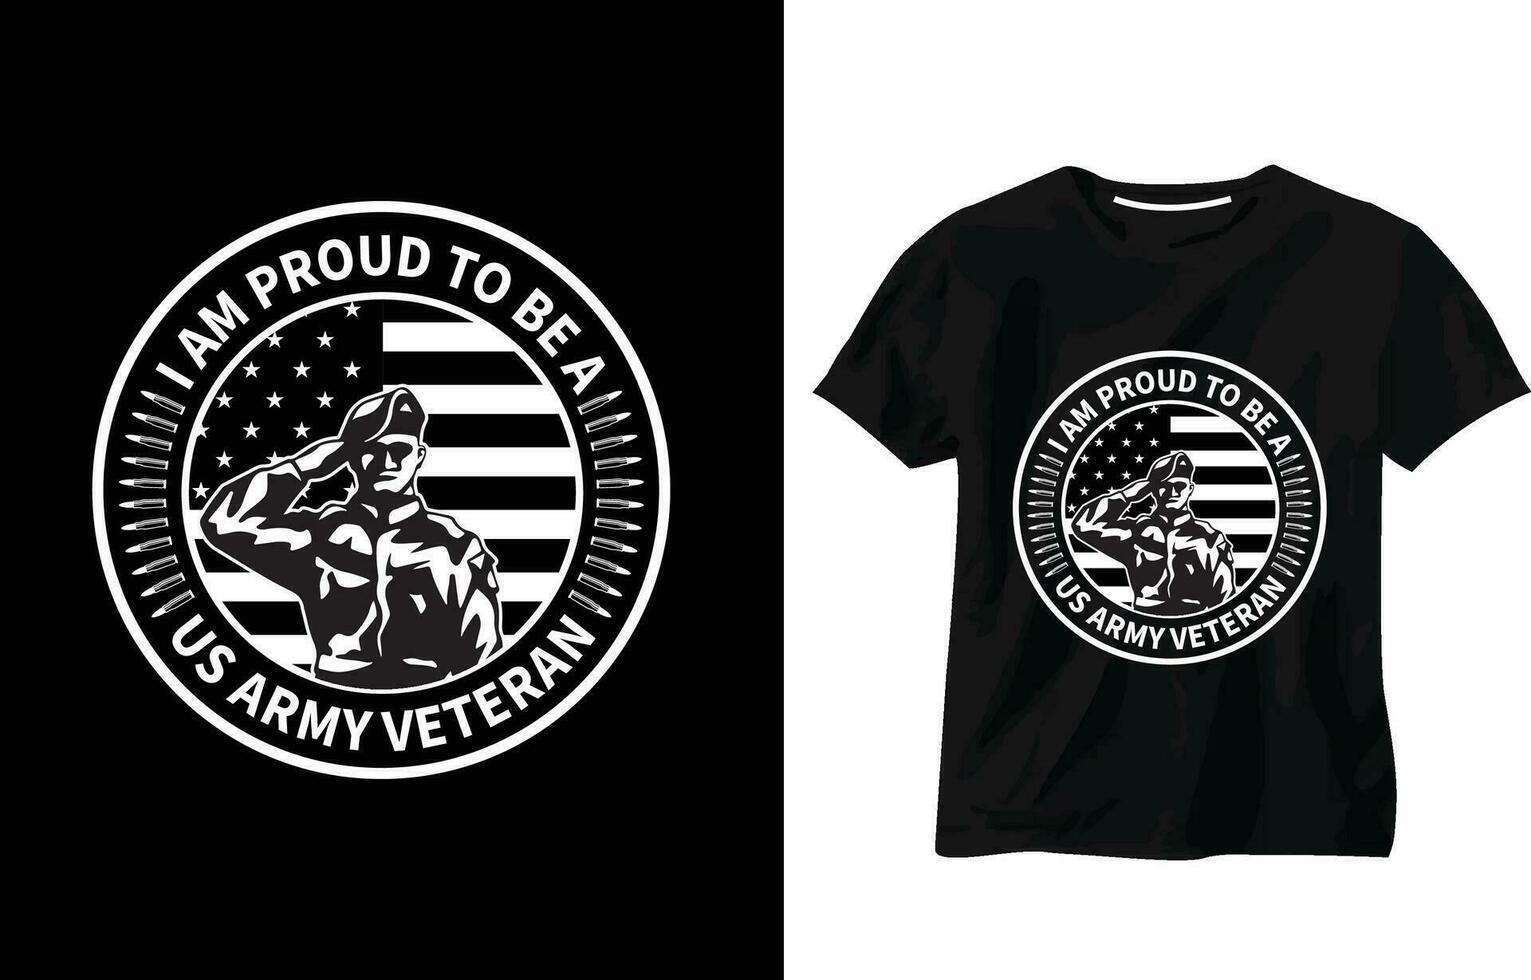 ich bin stolz zu Sein ein uns Heer Veteran T-Shirt Design, Soldat Jahrgang t Shirt, Militär- Heer Vektor, USA Flagge, patriotisch, Militär- Gruß, Veteran T-Shirt, Veteran Typografie T-Shirt Design vektor